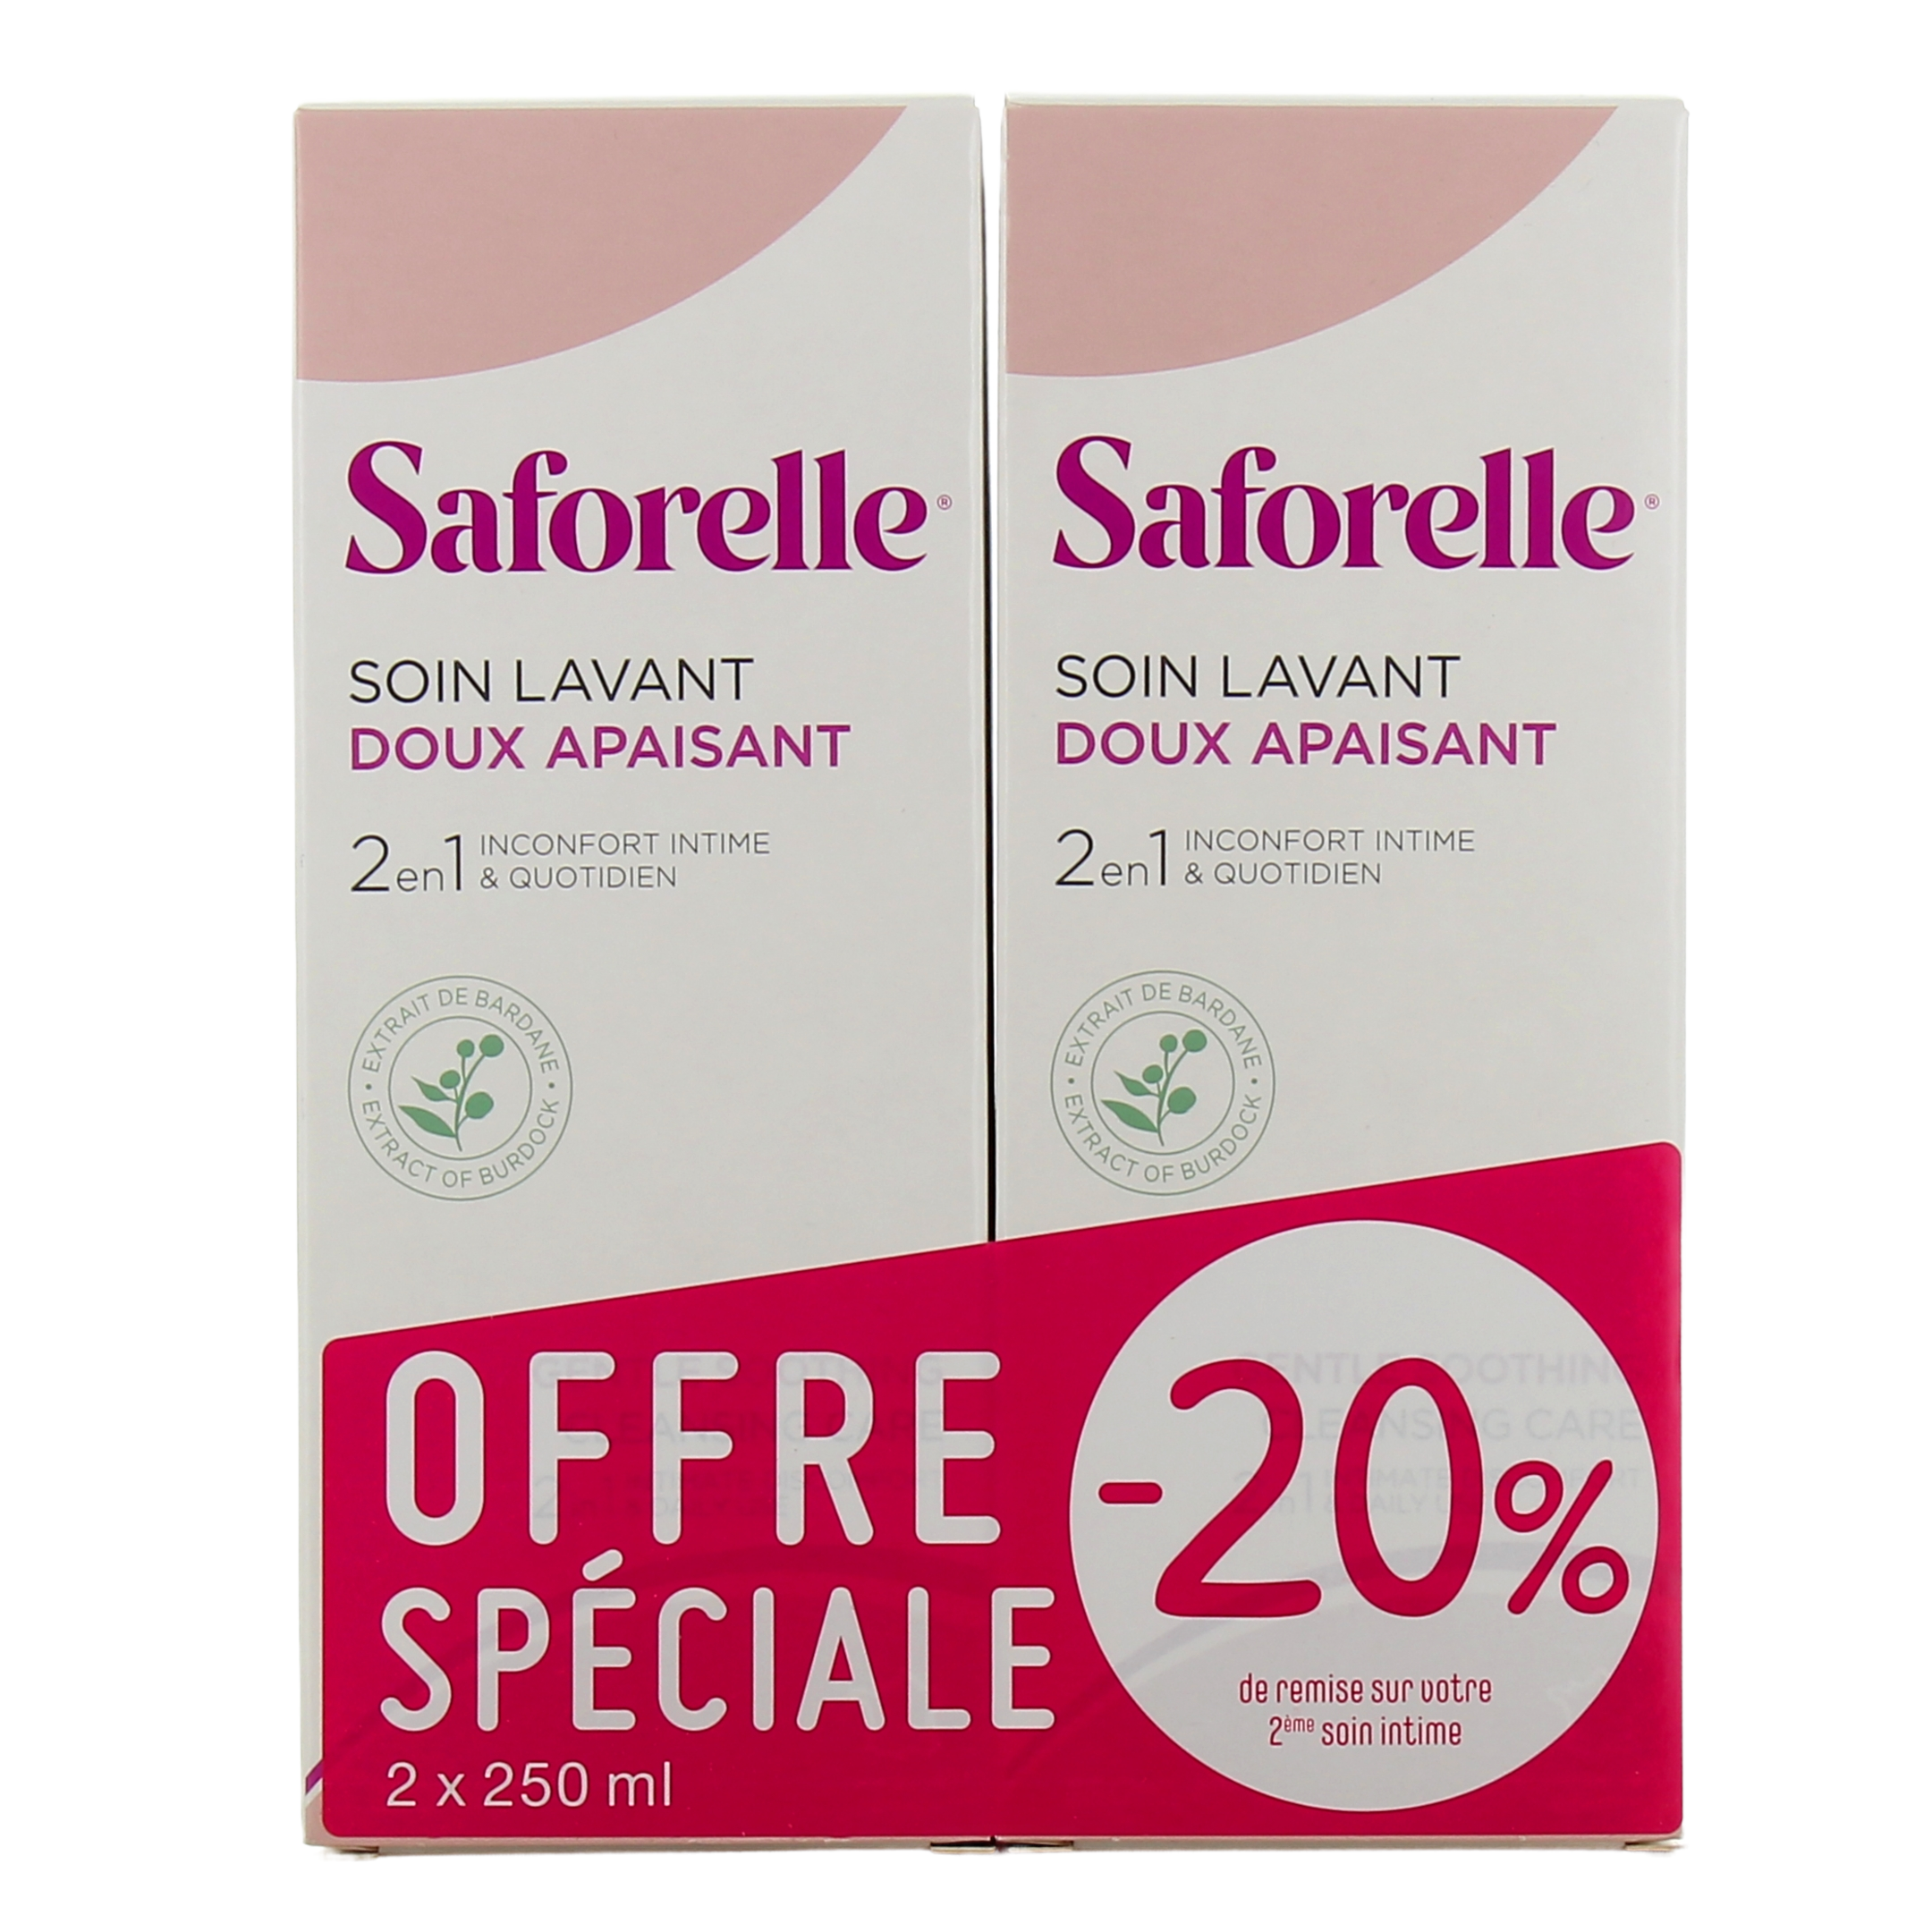 Saforelle Soin Lavant Doux 1 Litre - 33057 - Saforelle